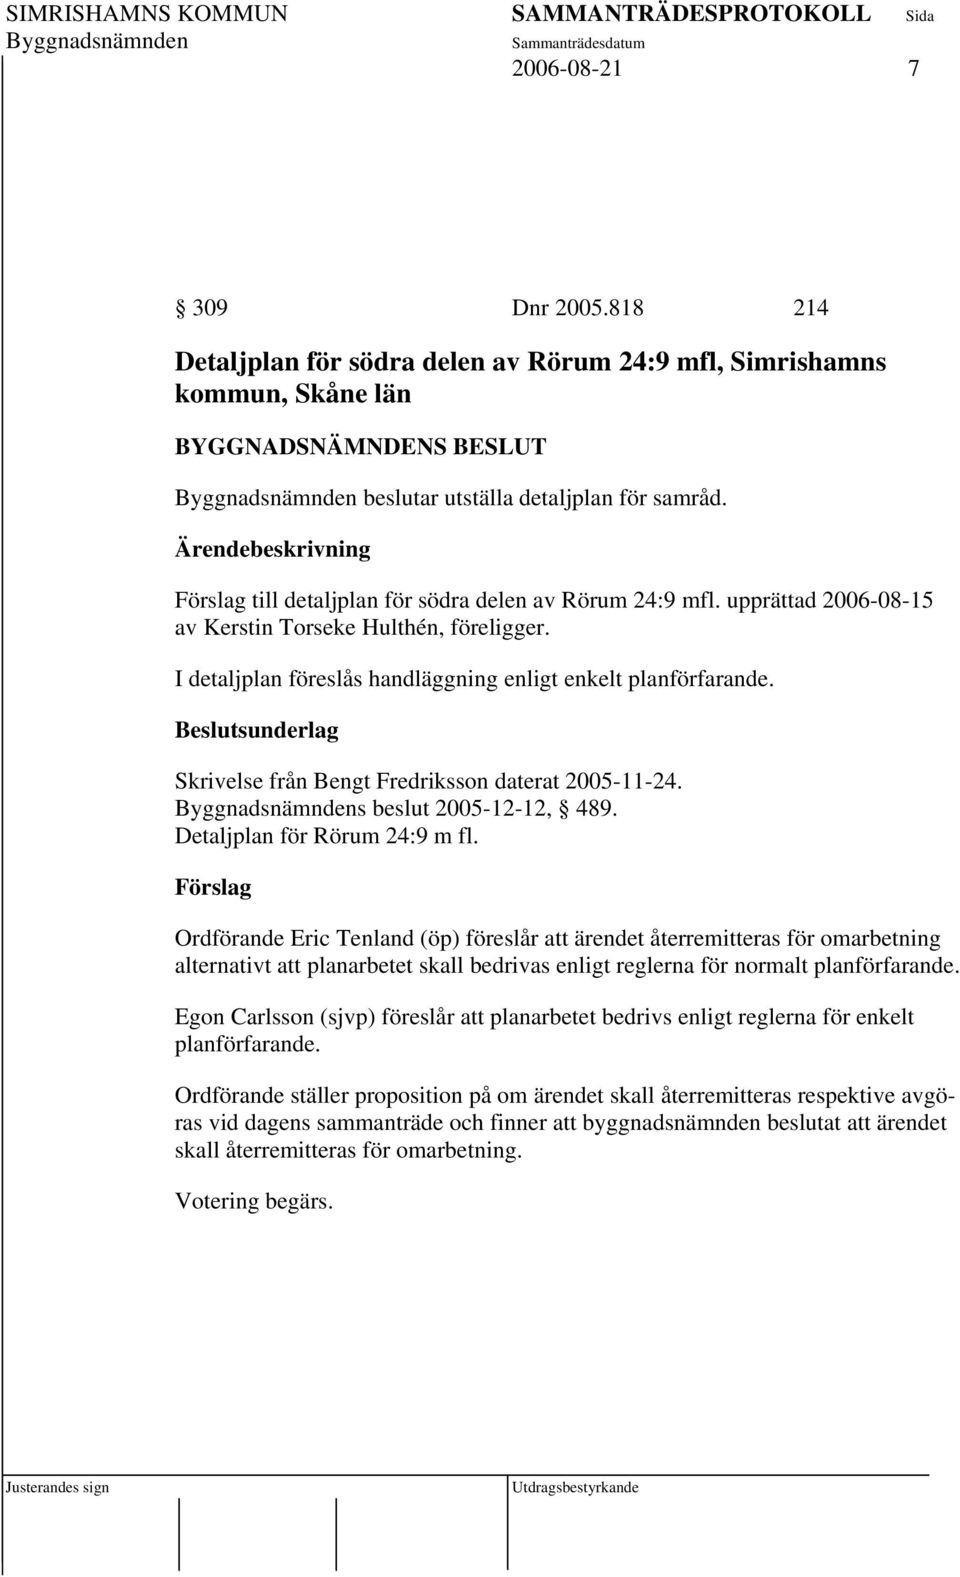 Skrivelse från Bengt Fredriksson daterat 2005-11-24. s beslut 2005-12-12, 489. Detaljplan för Rörum 24:9 m fl.